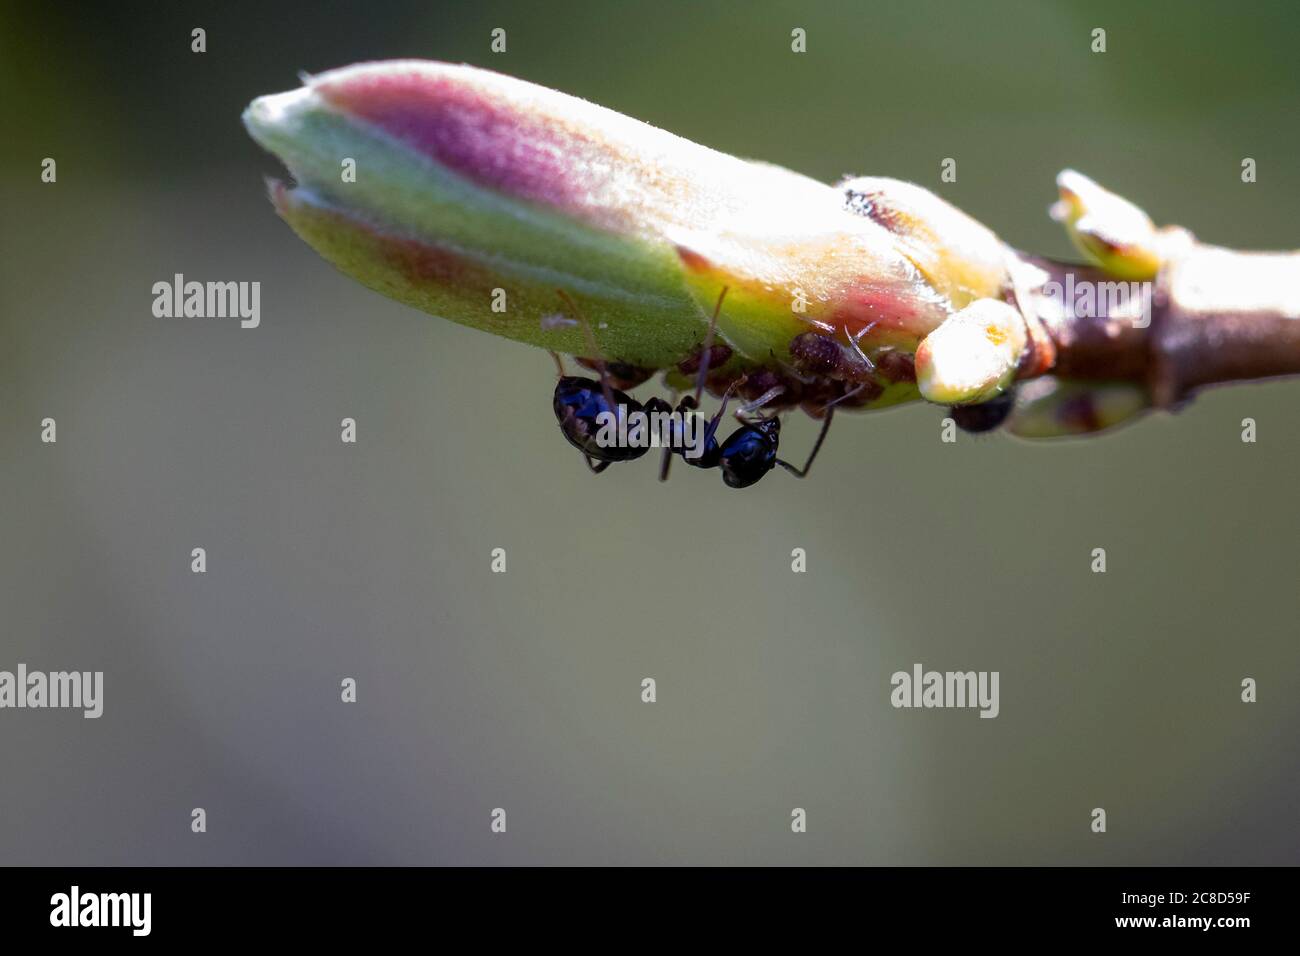 Ein Porträt einer Ameise, die Blattläuse melkt, die sich unter einer Blume an der Spitze eines Astes einer Pflanze befinden. Das schwarze Insekt ist an dem Honigtau interessiert Stockfoto